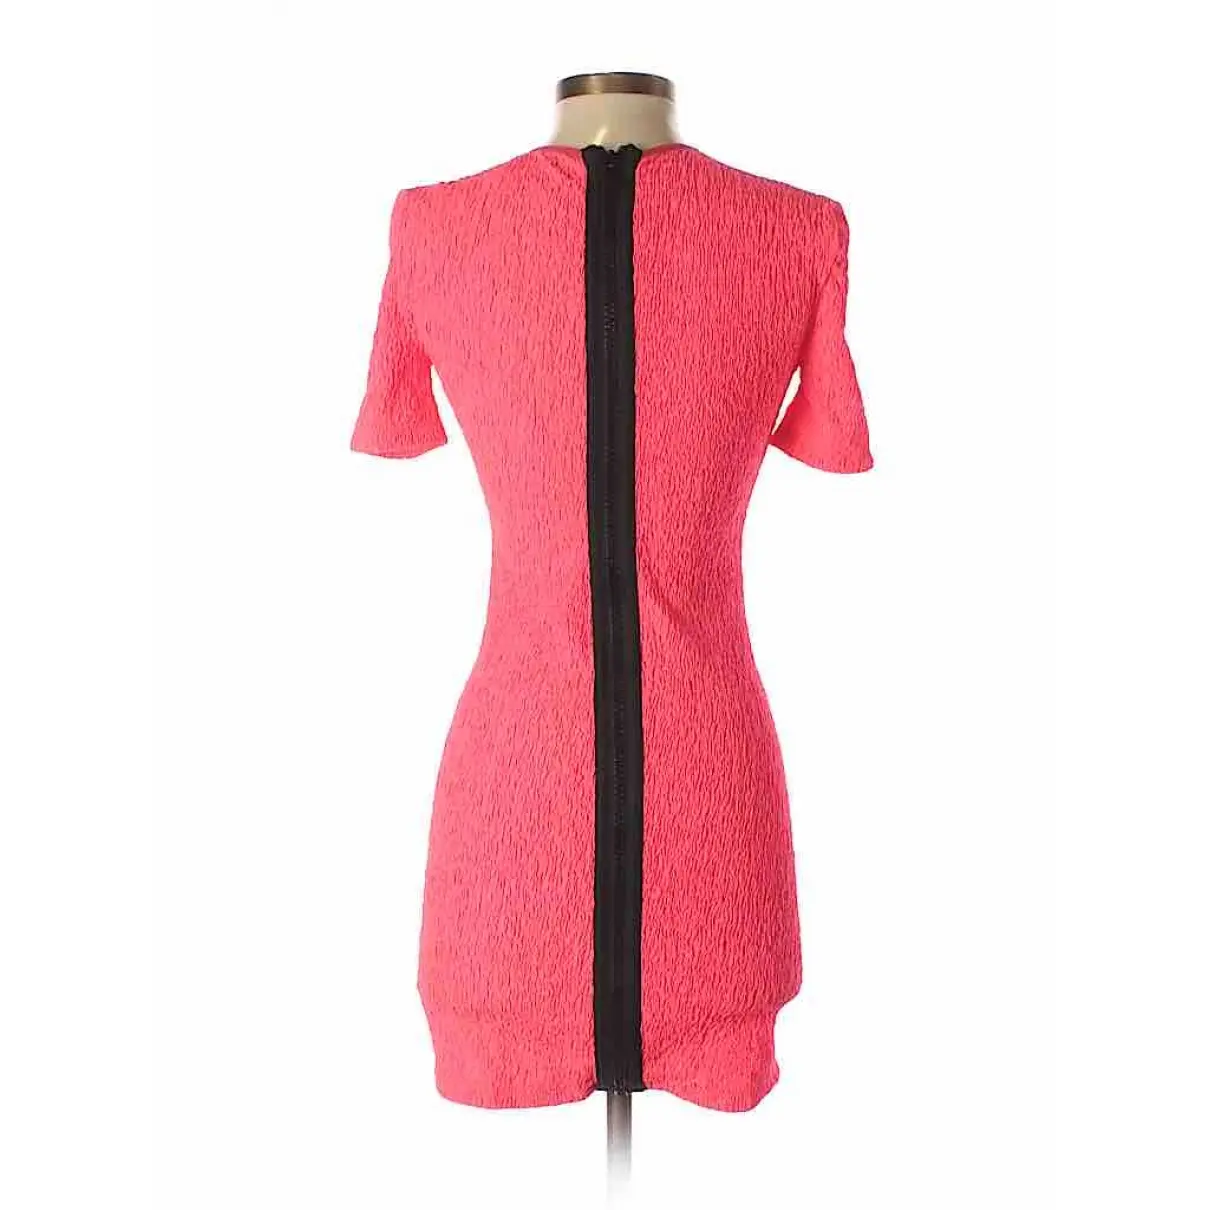 Buy Brian Lichtenberg Mini dress online